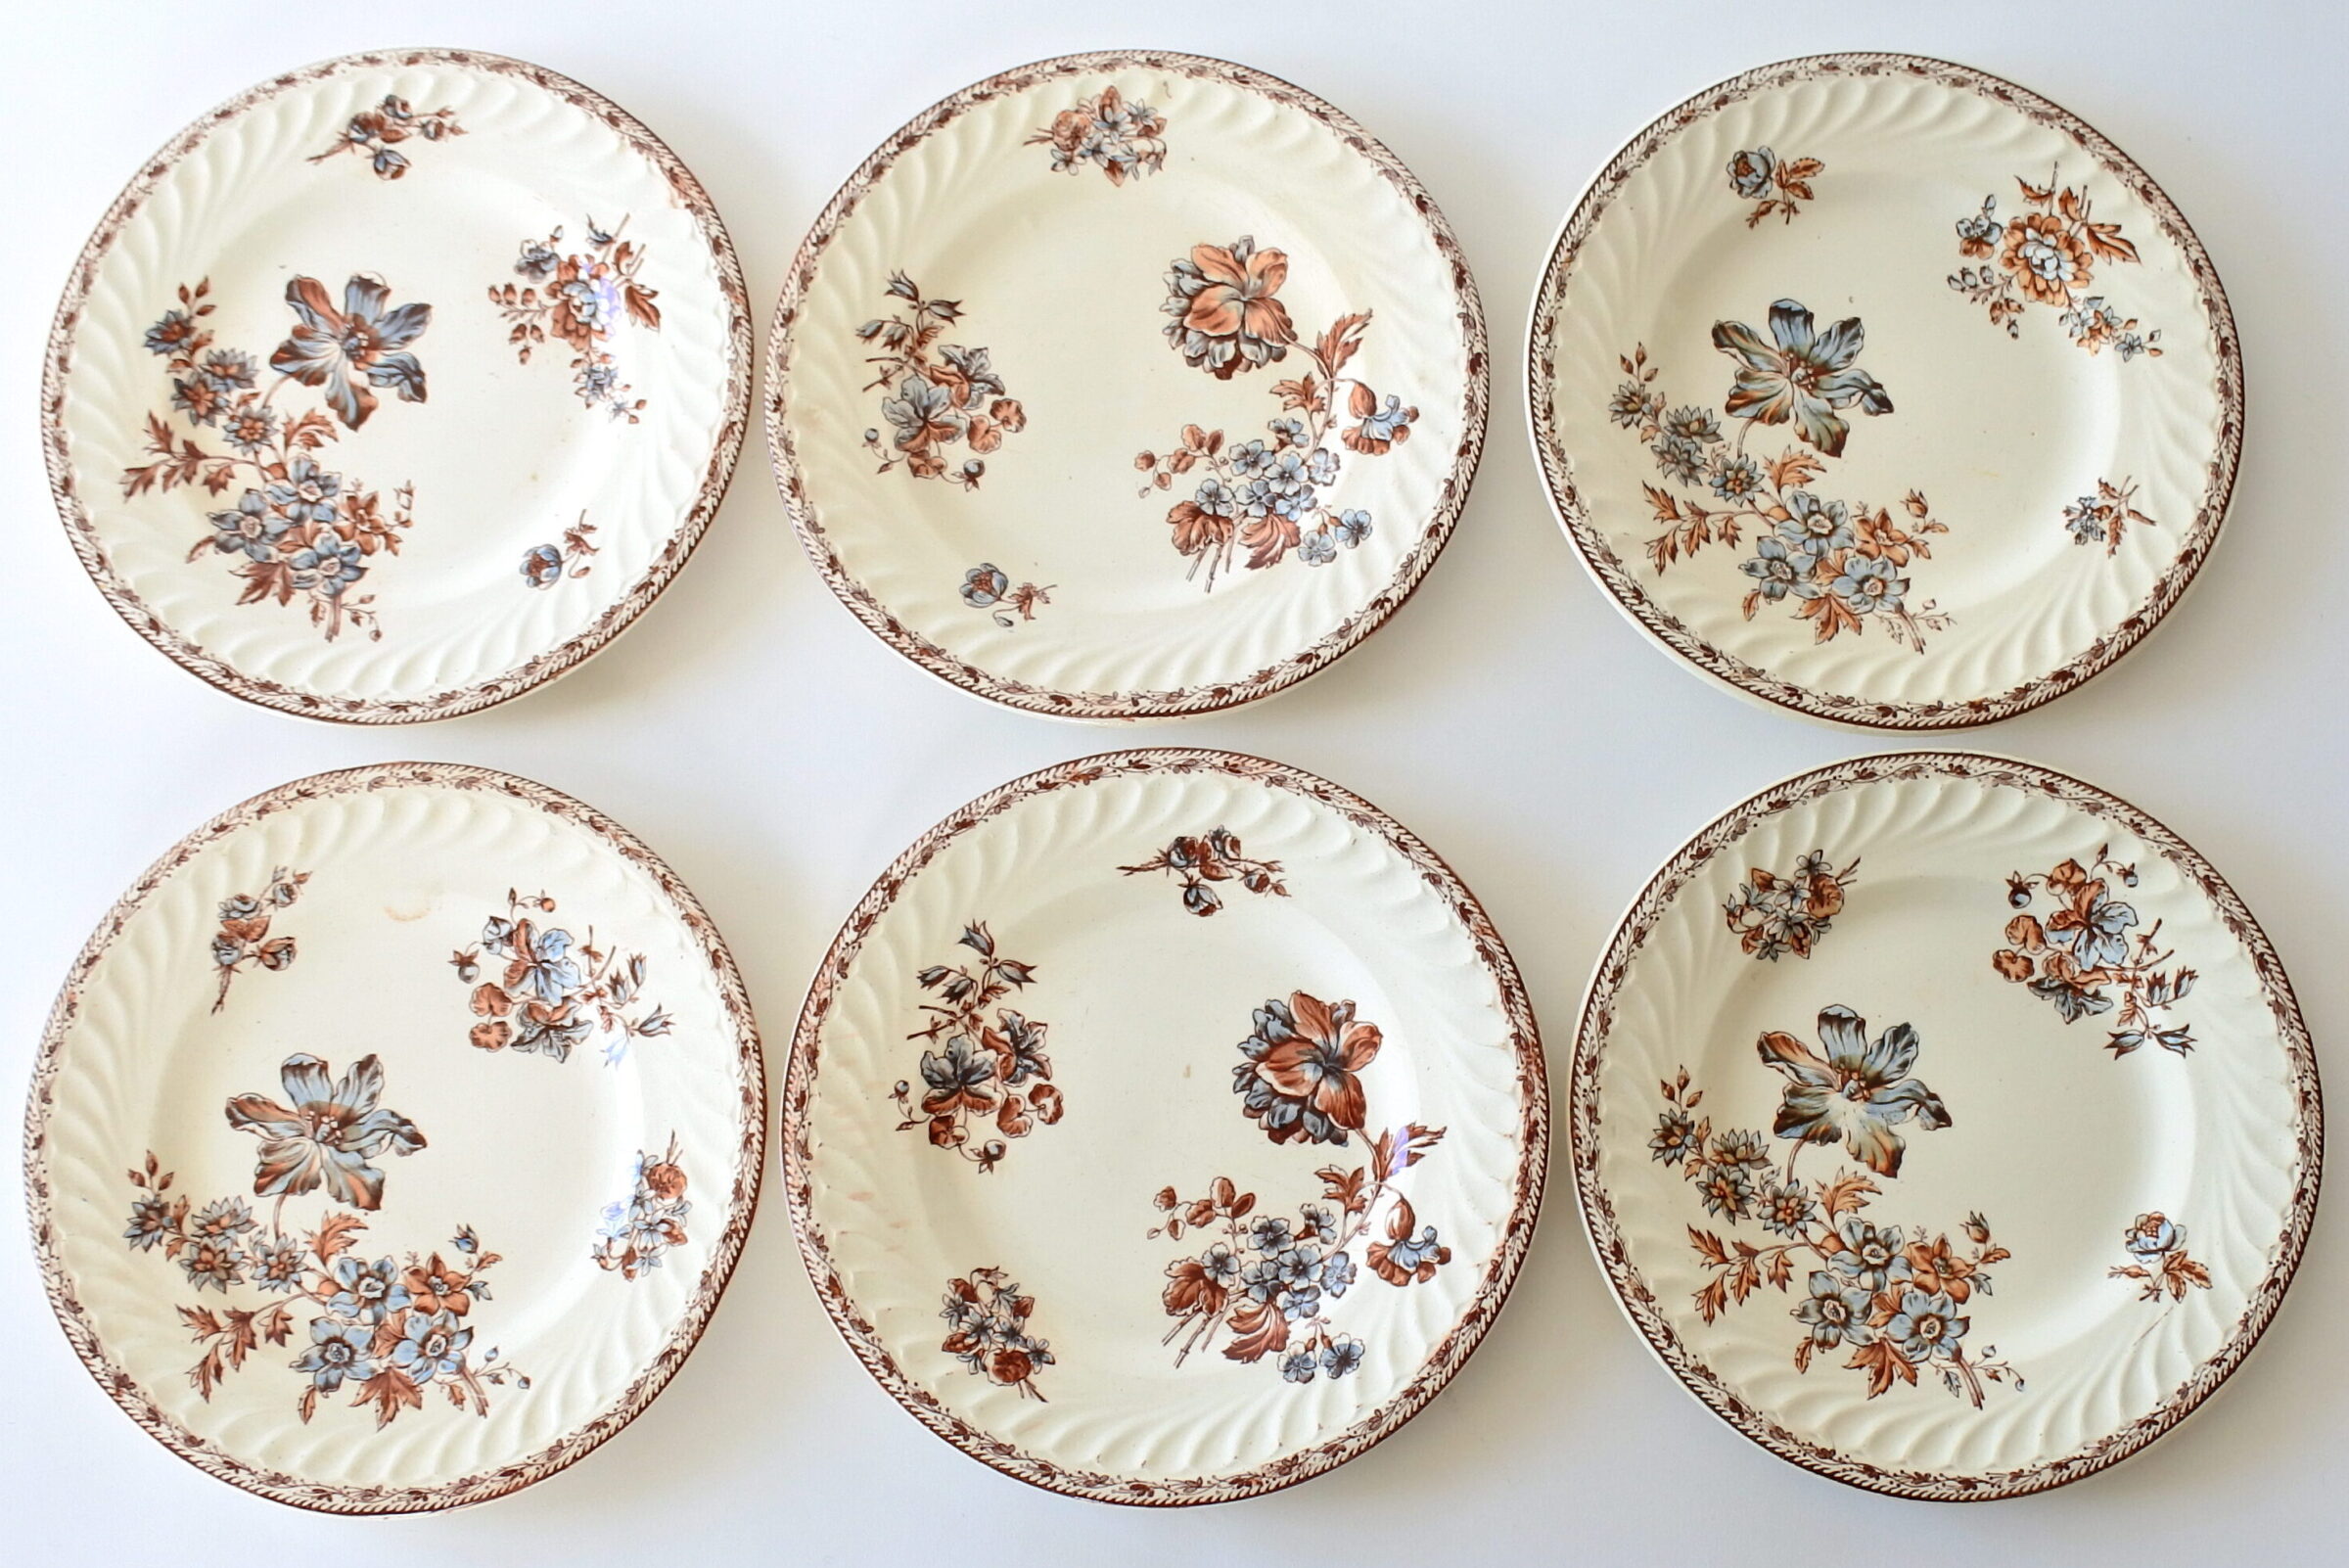 6 piatti da frutta in ceramica di Salins con rami di fiori su fondo avorio